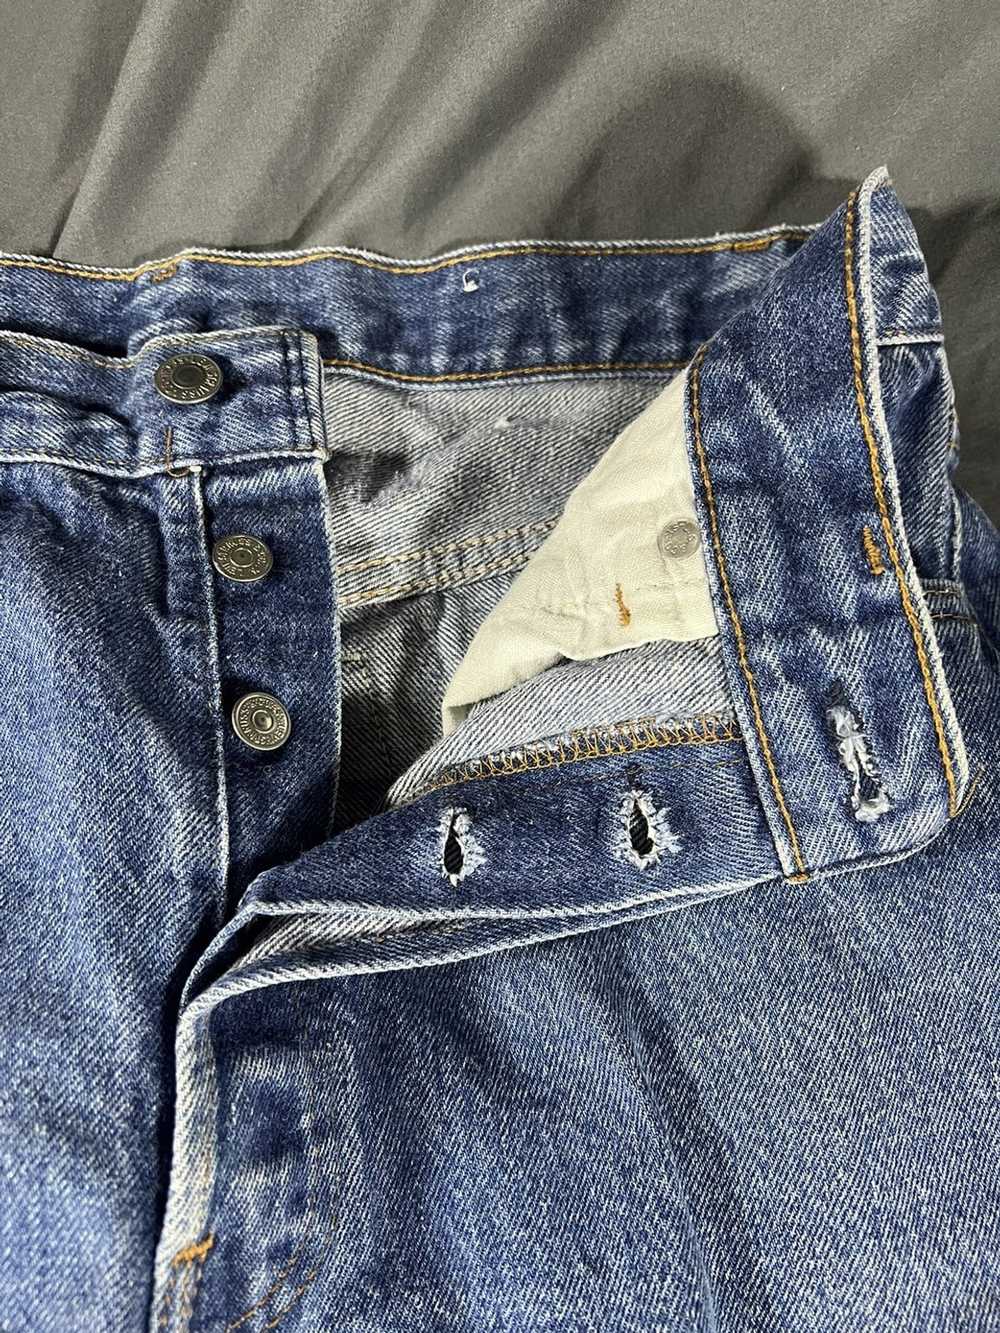 Levi's Levi’s 501 jeans - image 5